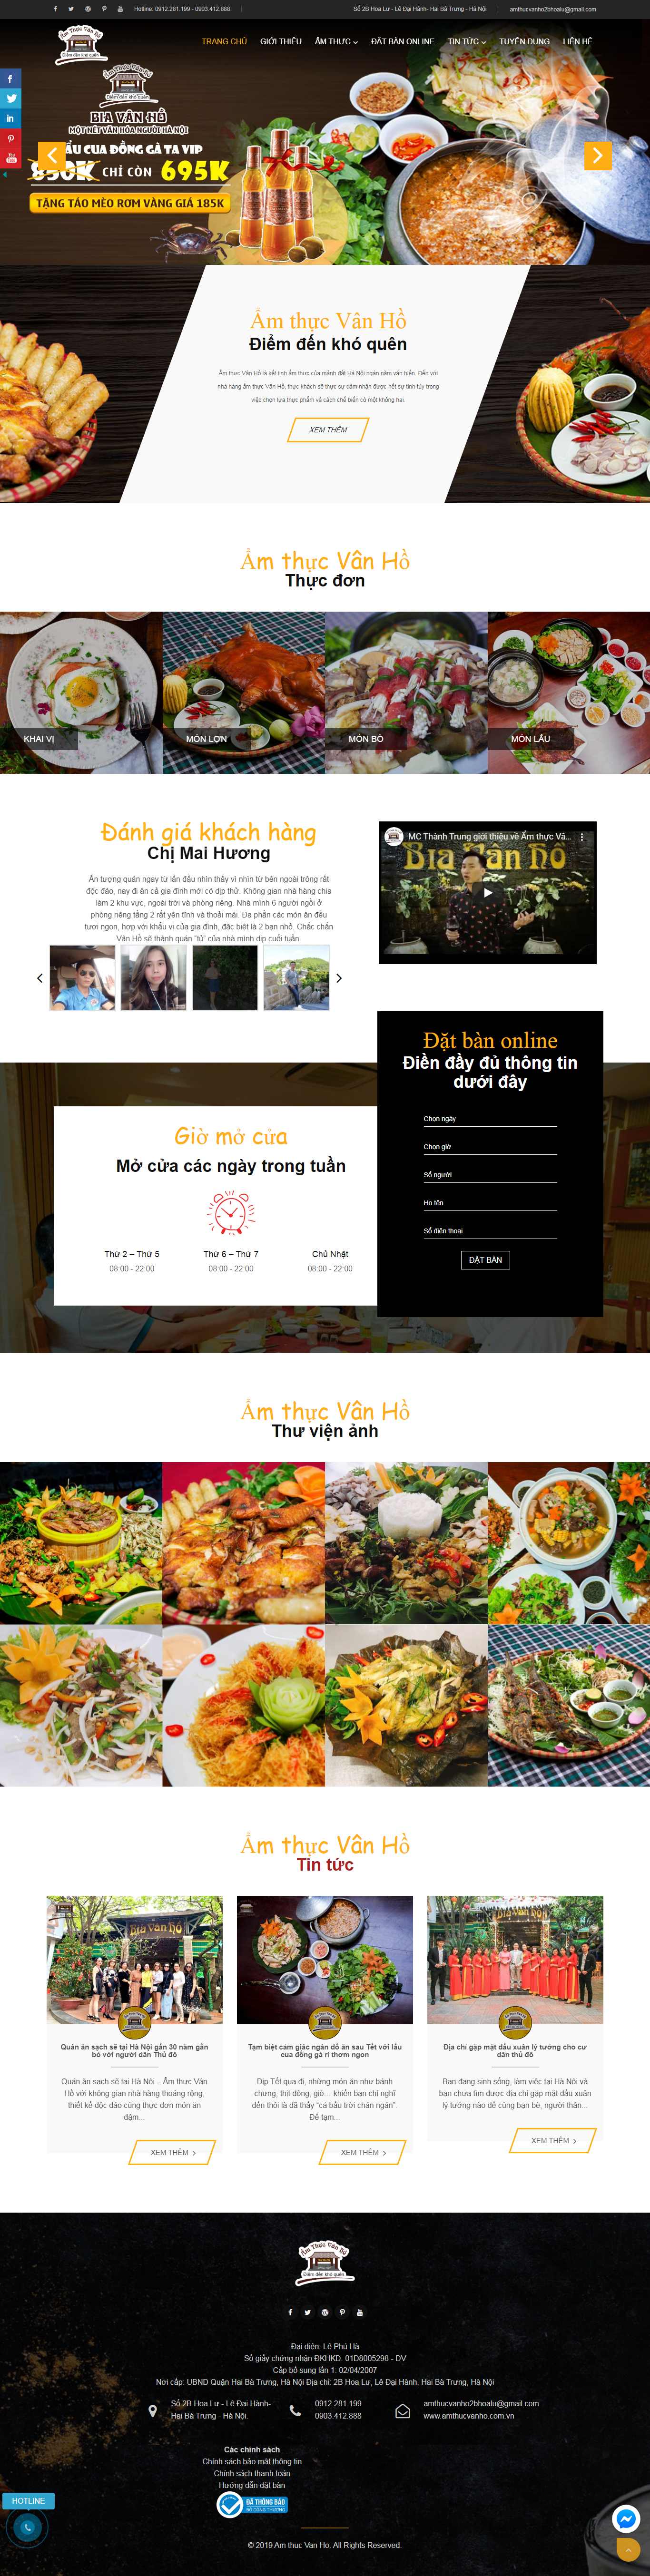 Thiết kế Website nhà hàng ẩm thực - amthucvanho.com.vn